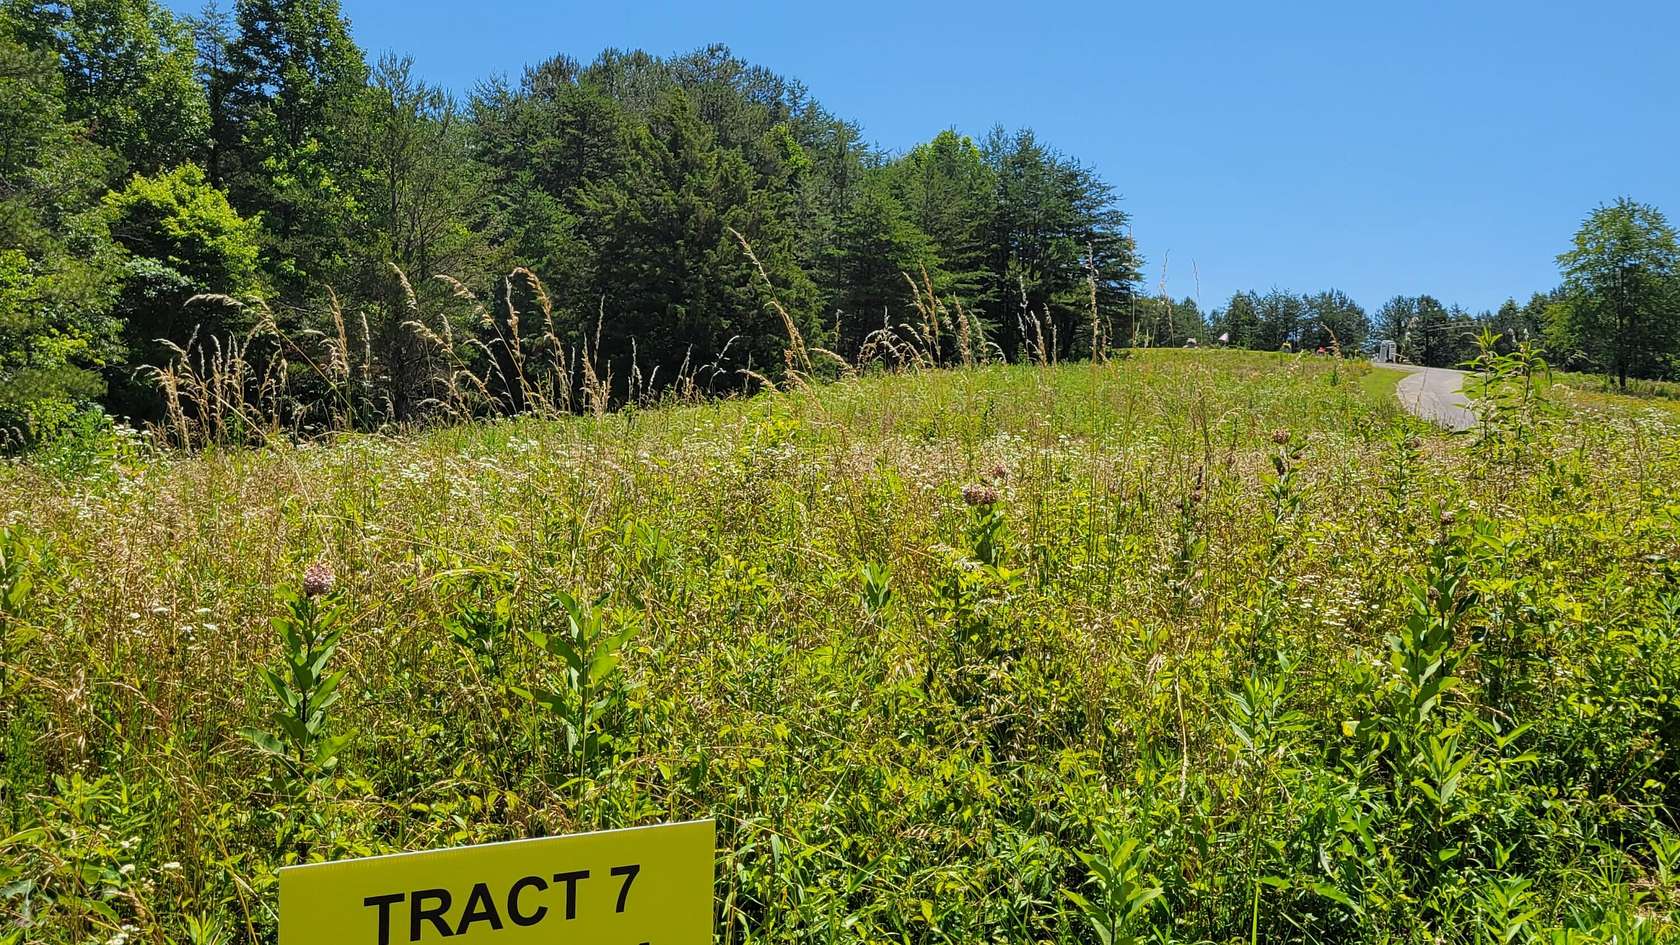 5 Acres of Land for Sale in East Bernstadt, Kentucky